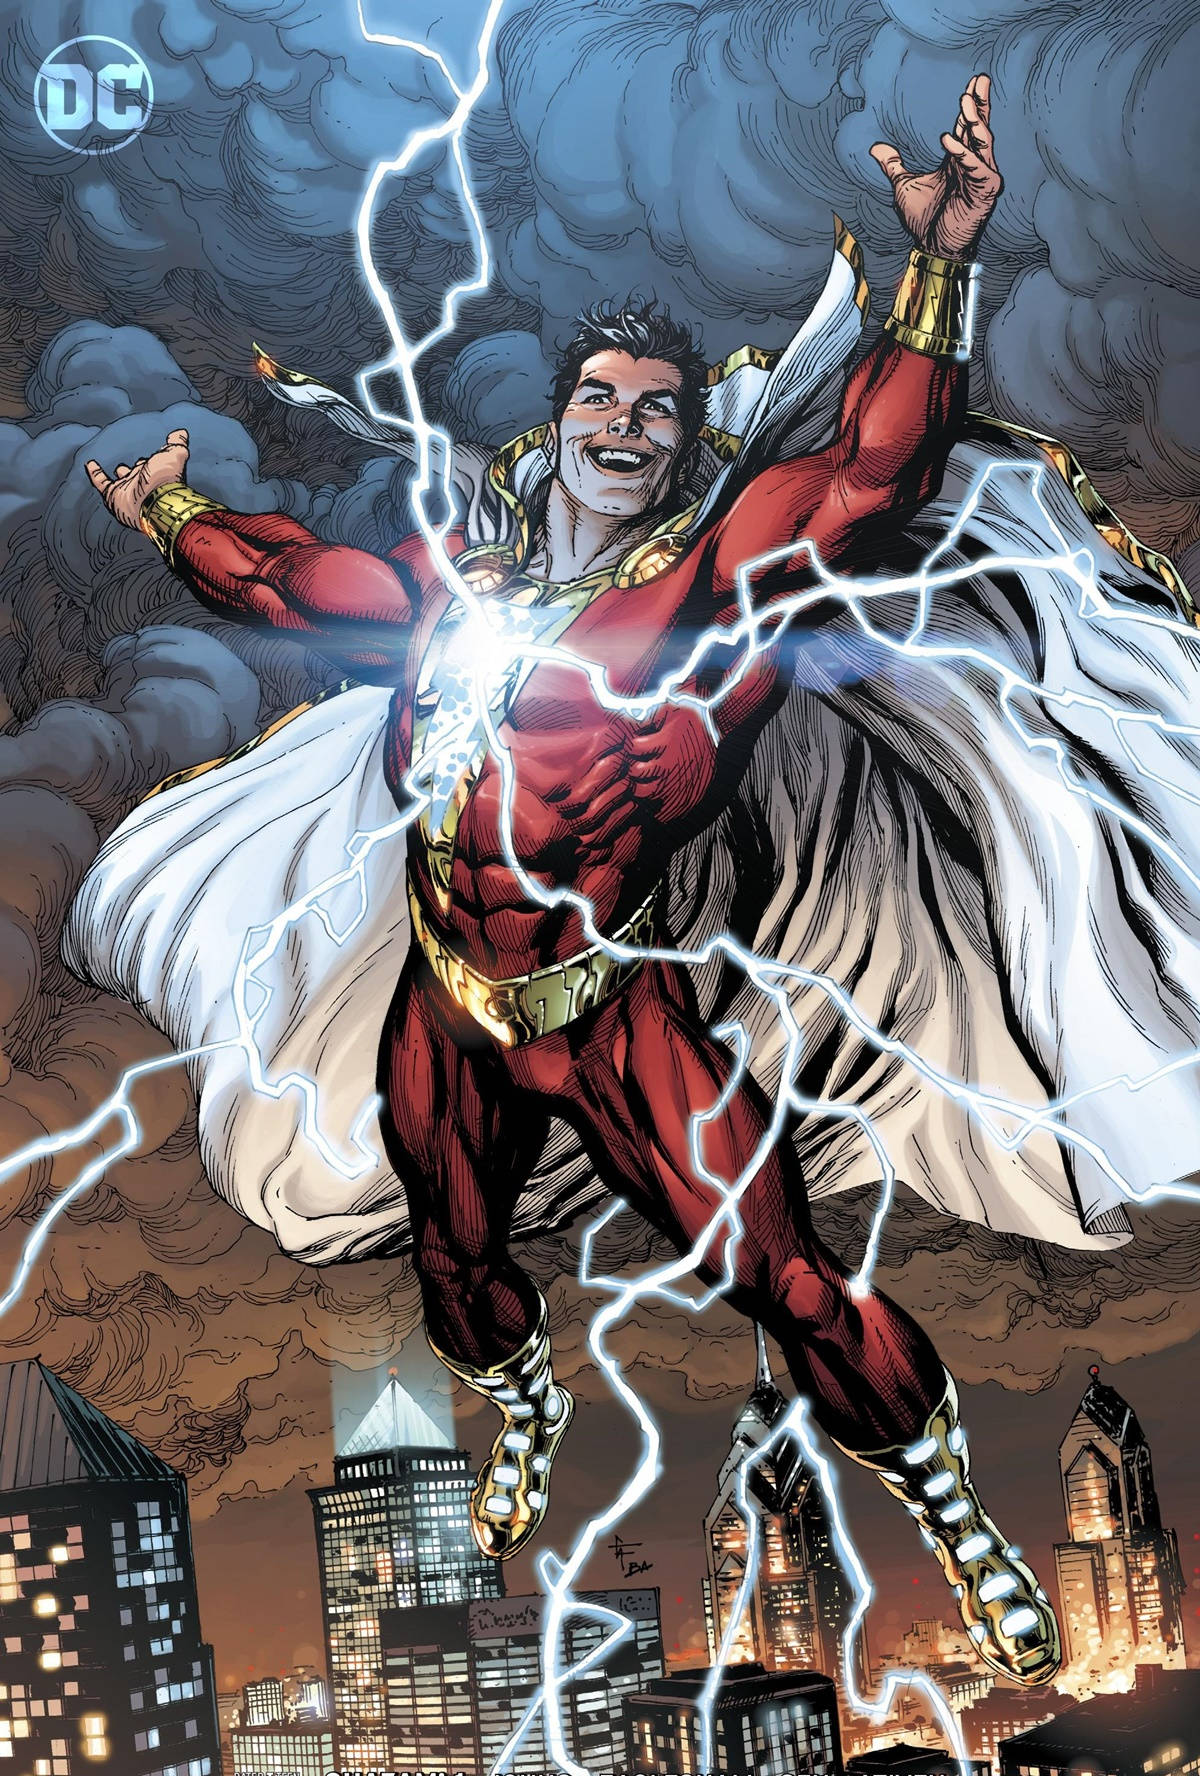 Tillgängligsom Bakgrundsbild För Din Dator Eller Mobiltelefon: Shazam, Dc Comics Superhjälte Action. Wallpaper